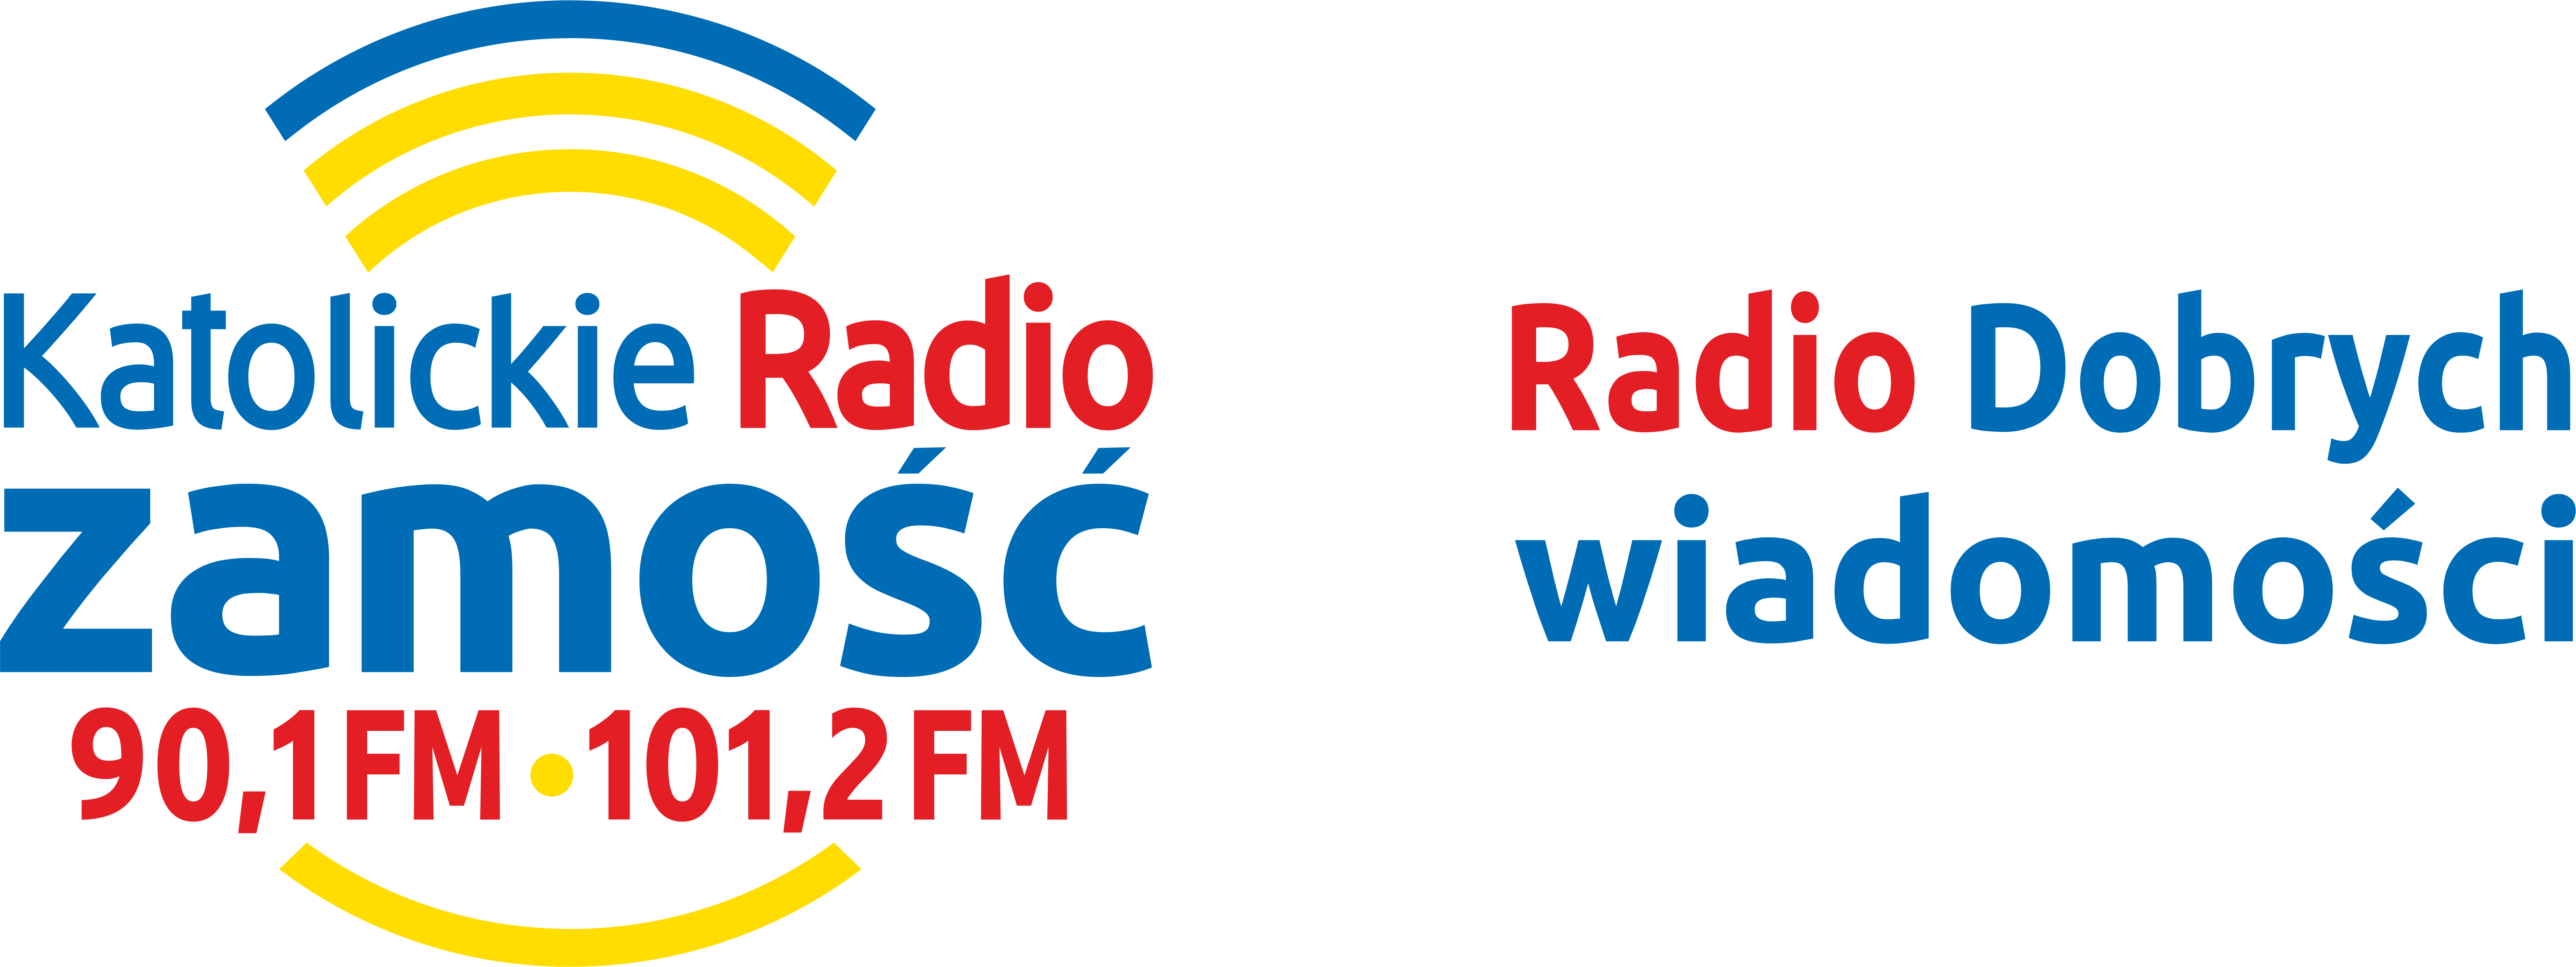 Katolickie Radio Zamość - Radio Dobrych Wiadomości